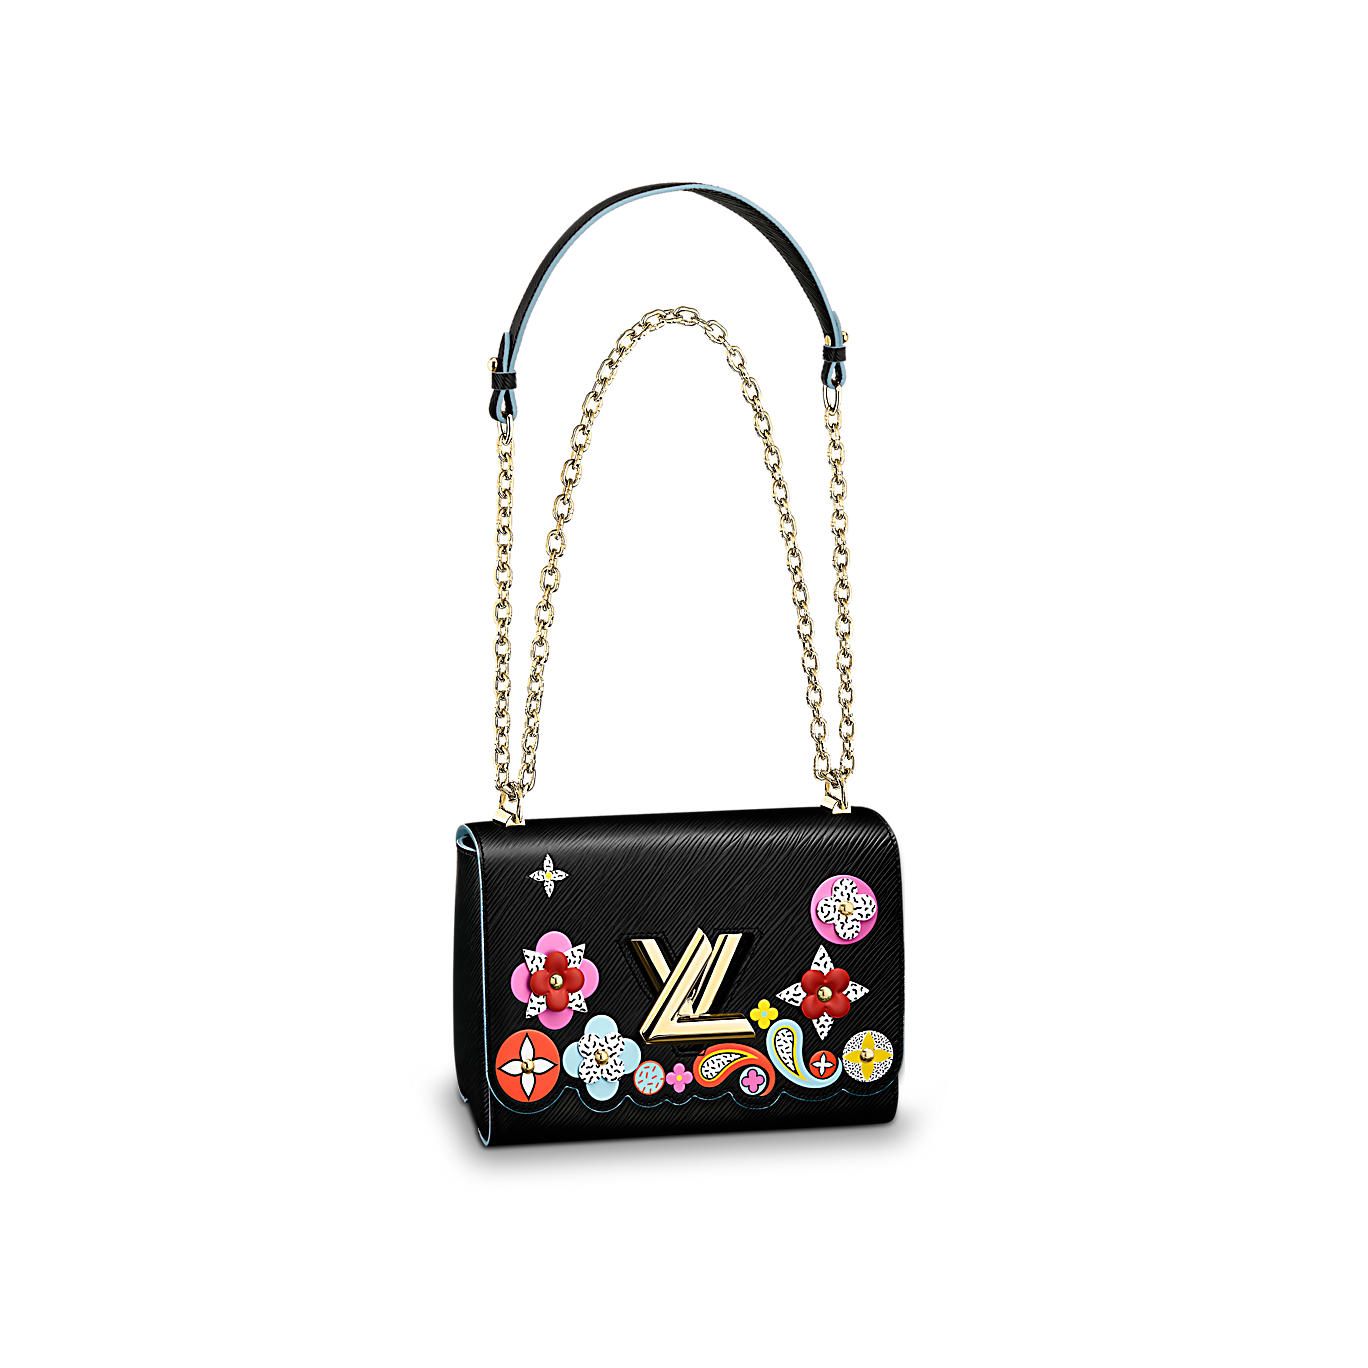 Borsa Twist MM Louis Vuitton in pelle Epi nera con doppia catena dorata e  fiori